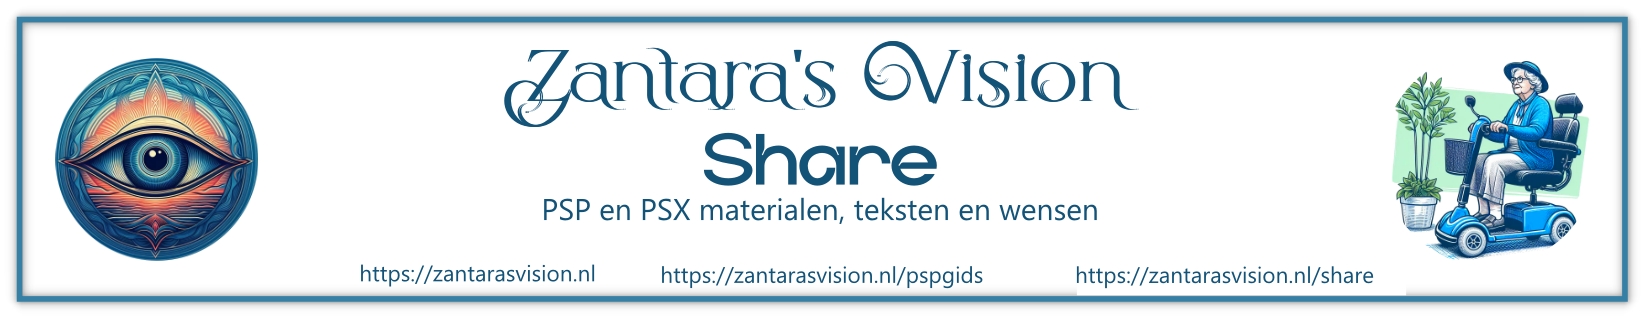 Zantara's Share